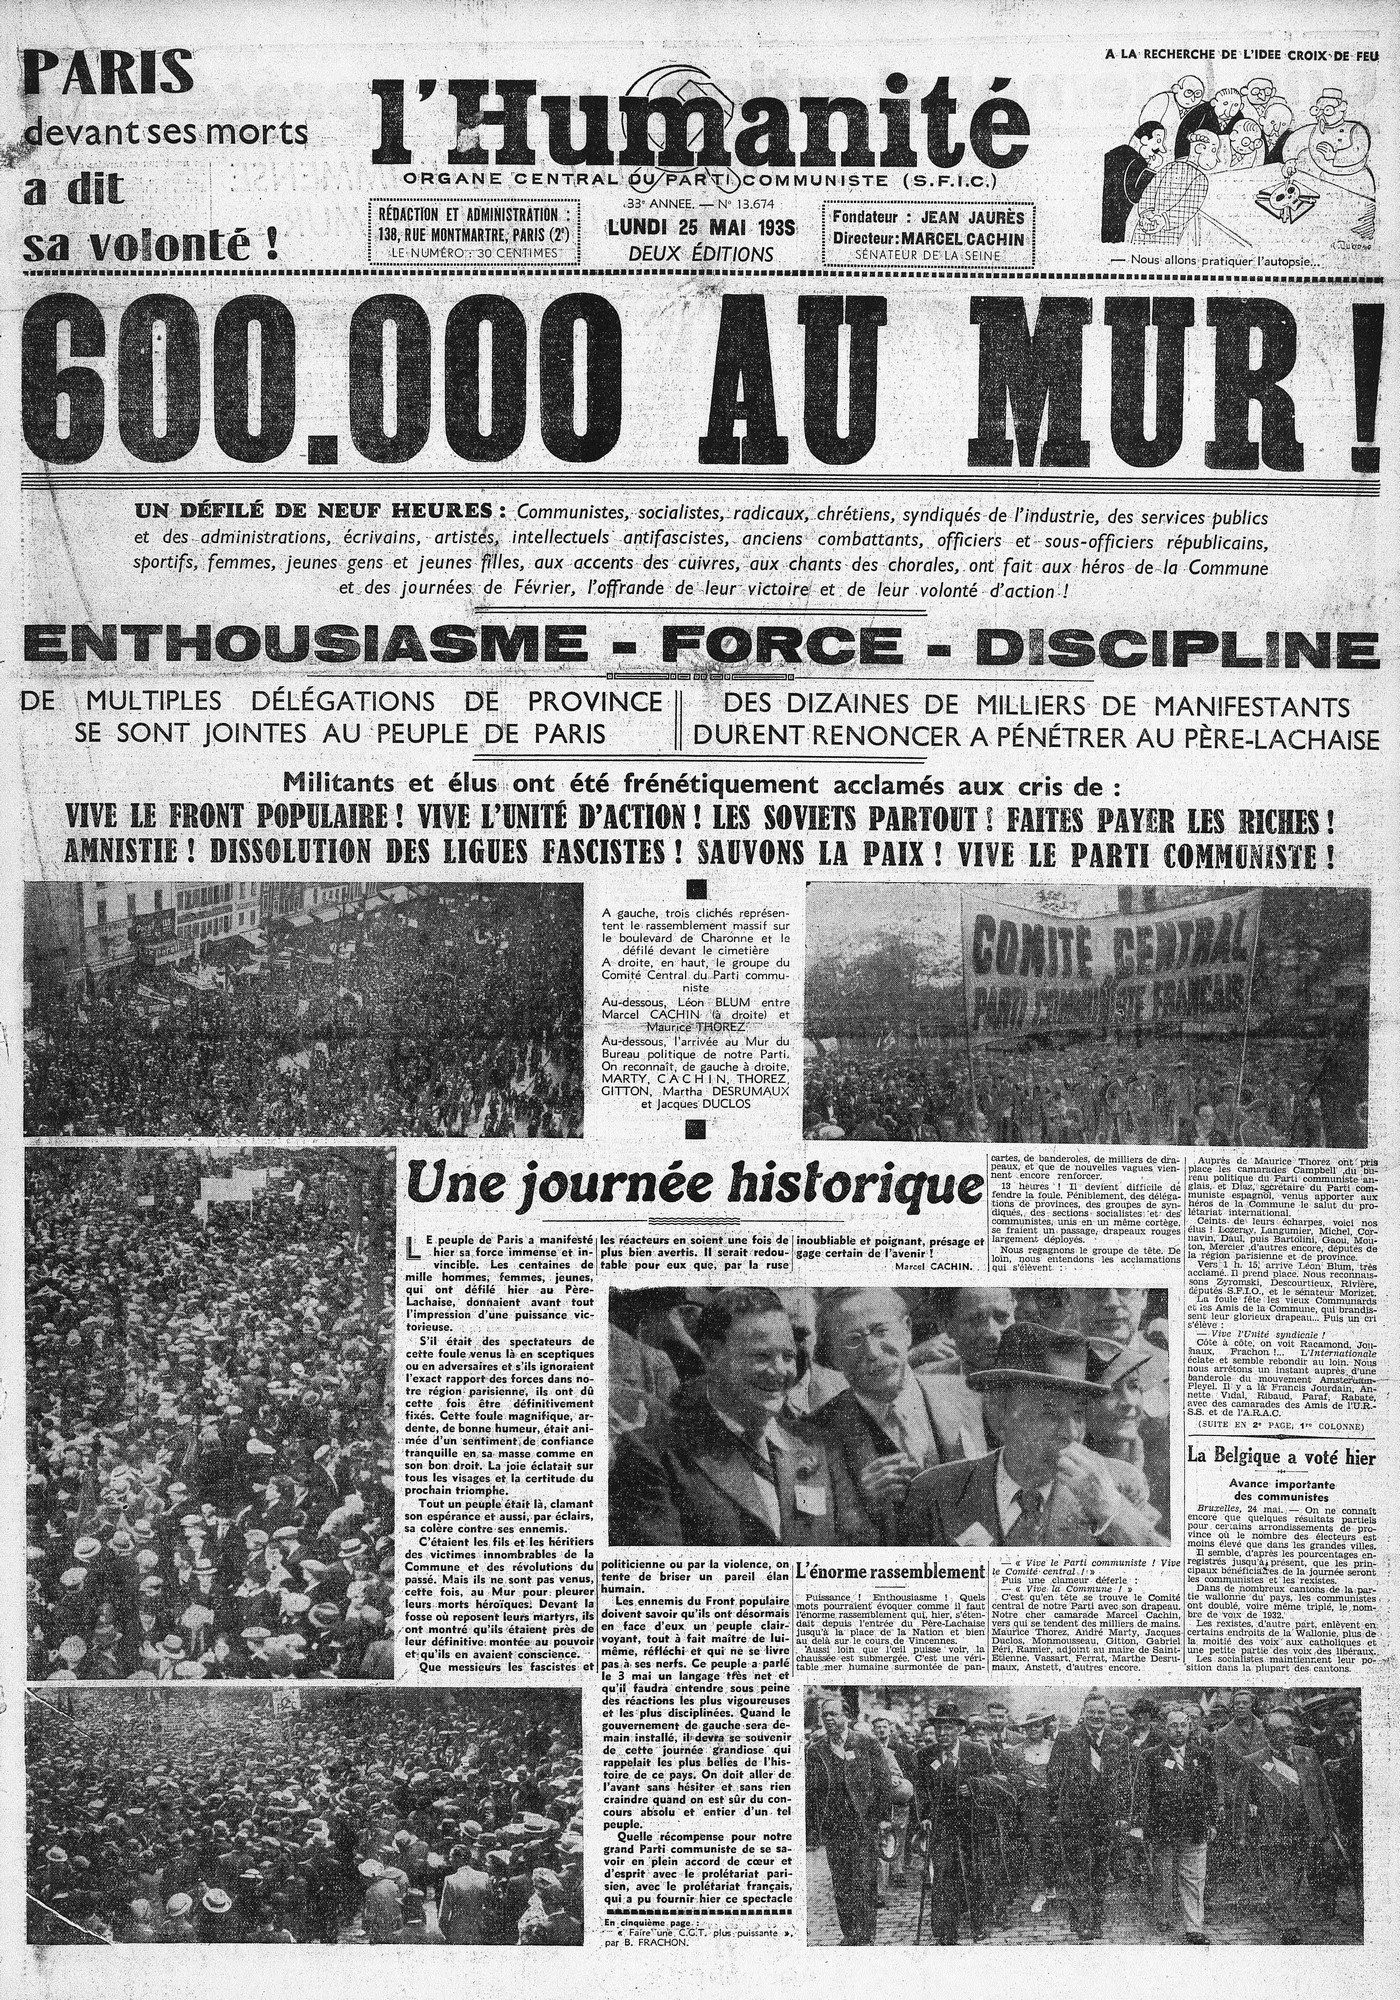 Une de l'Humanité : 600 000 personnes au mur des fédérés – L’Humanité du 25 mai 1936 